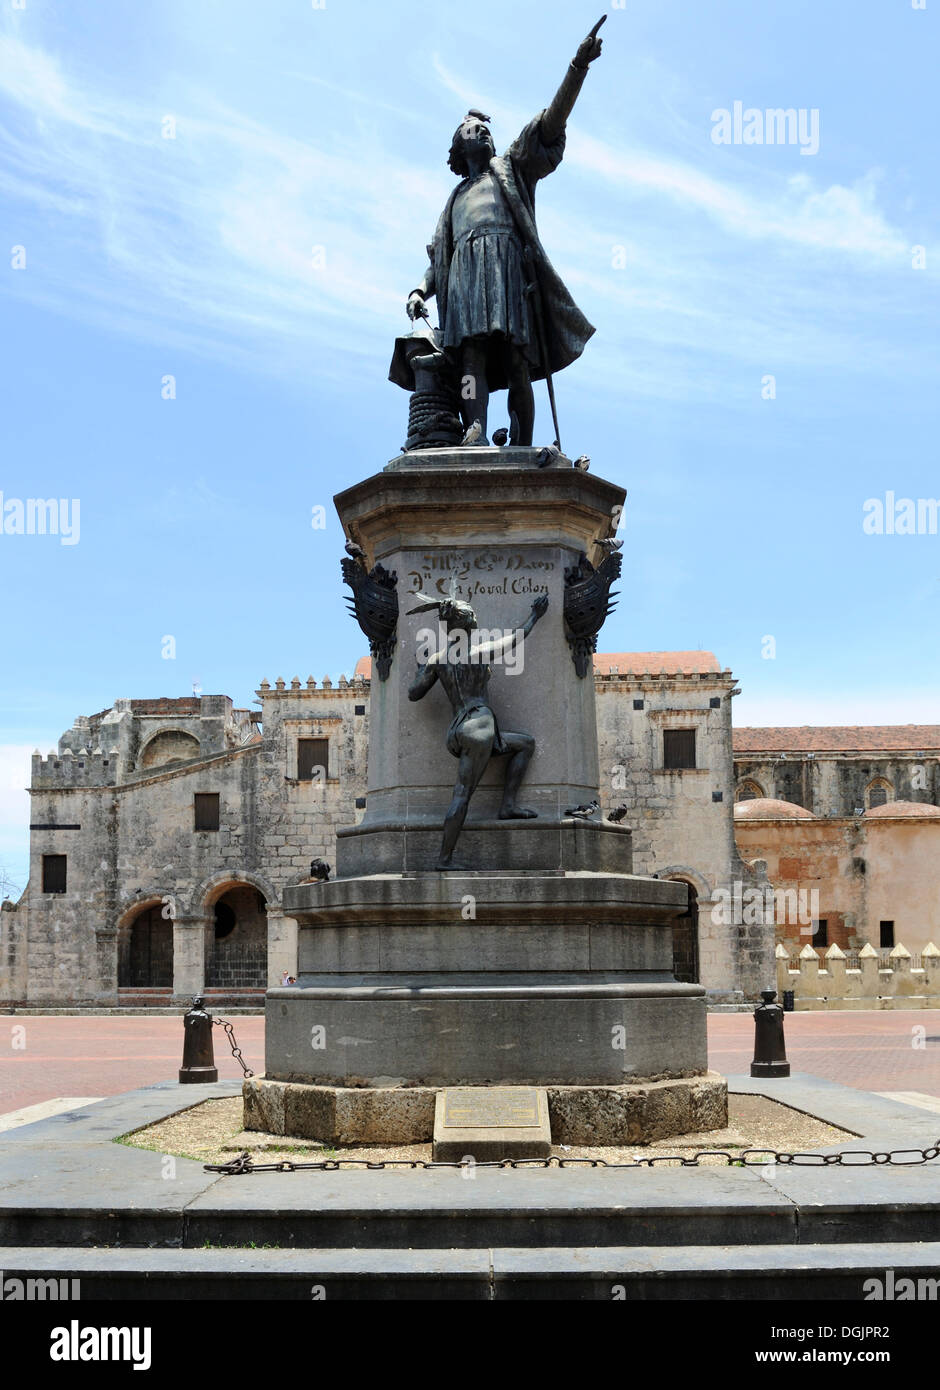 Plaza Place Colon avec Statue de Columbus et de la cathédrale Santa Maria la Menor, la plus ancienne cathédrale du Nouveau Monde, 1532 Banque D'Images